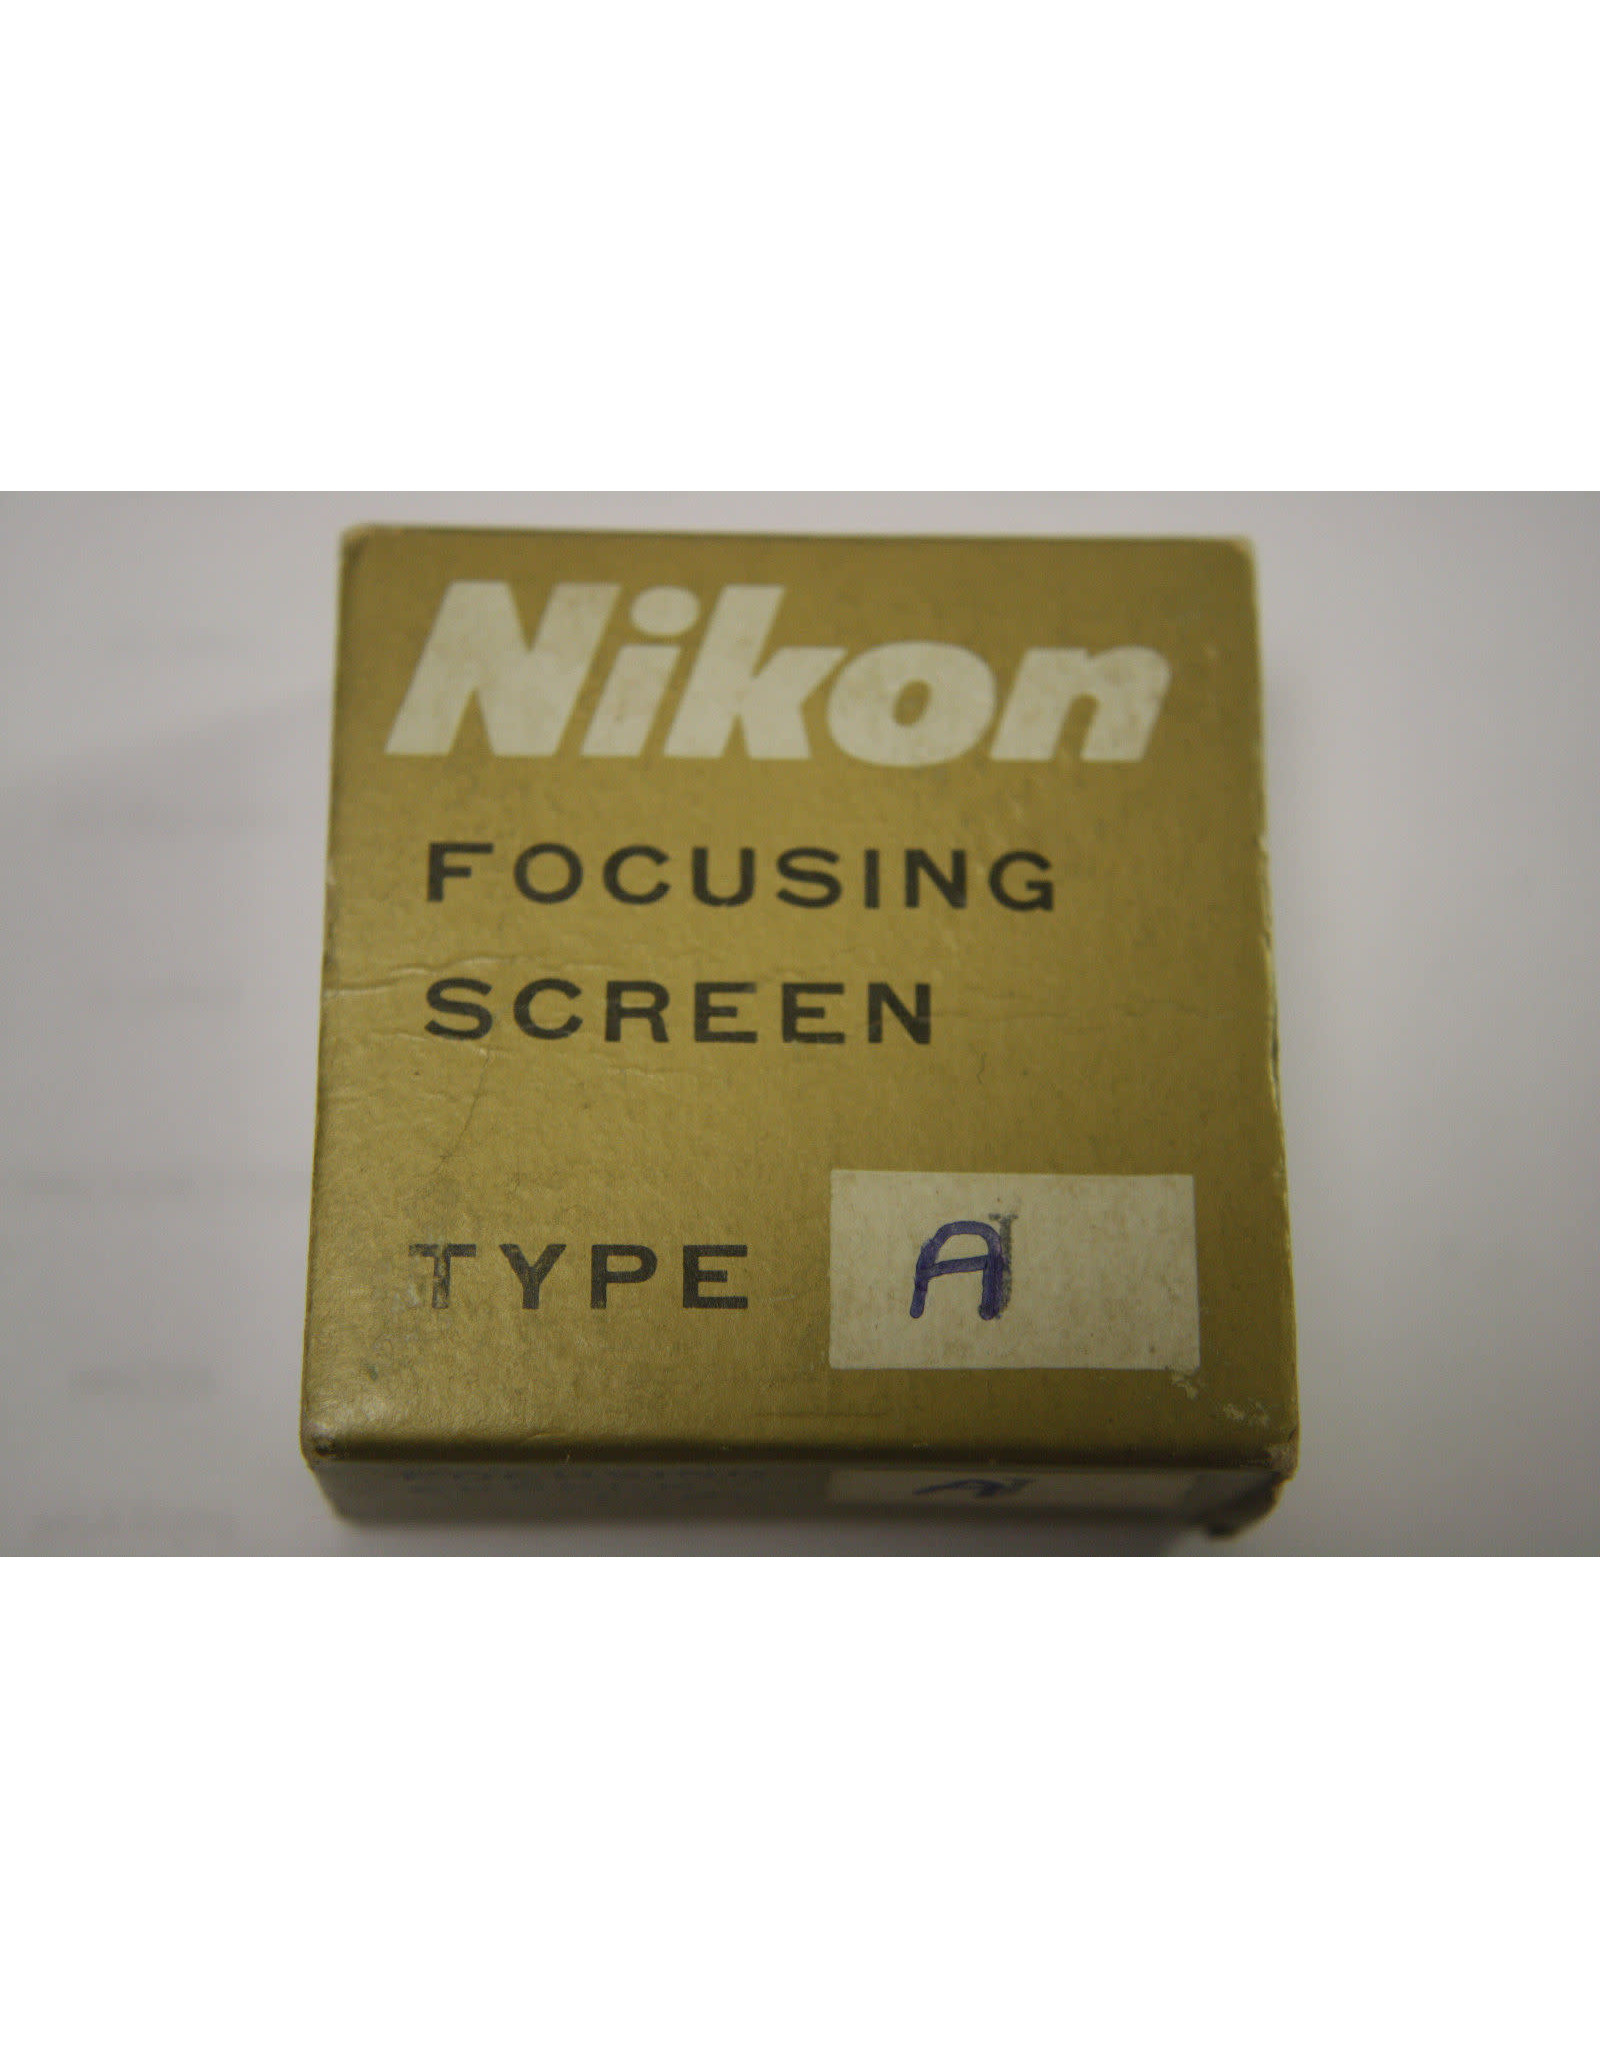 Nikon F Focusing Screen Type "A"